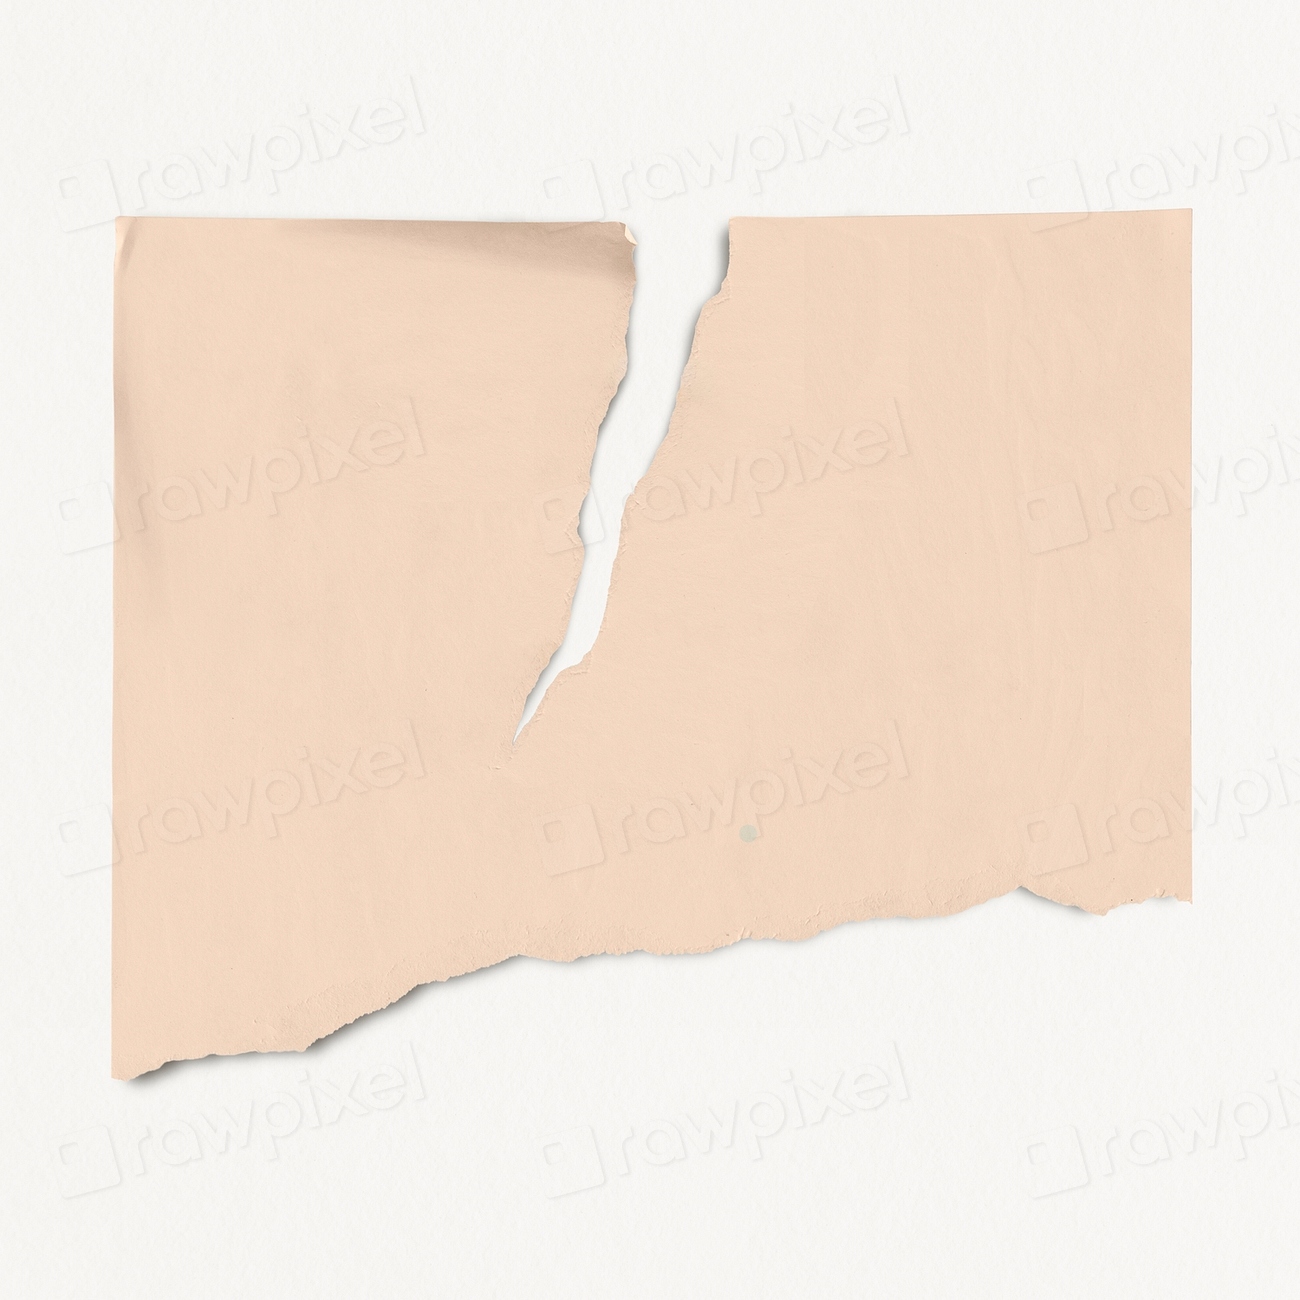 Ripped paper mockup, pastel orange | Free PSD Mockup - rawpixel